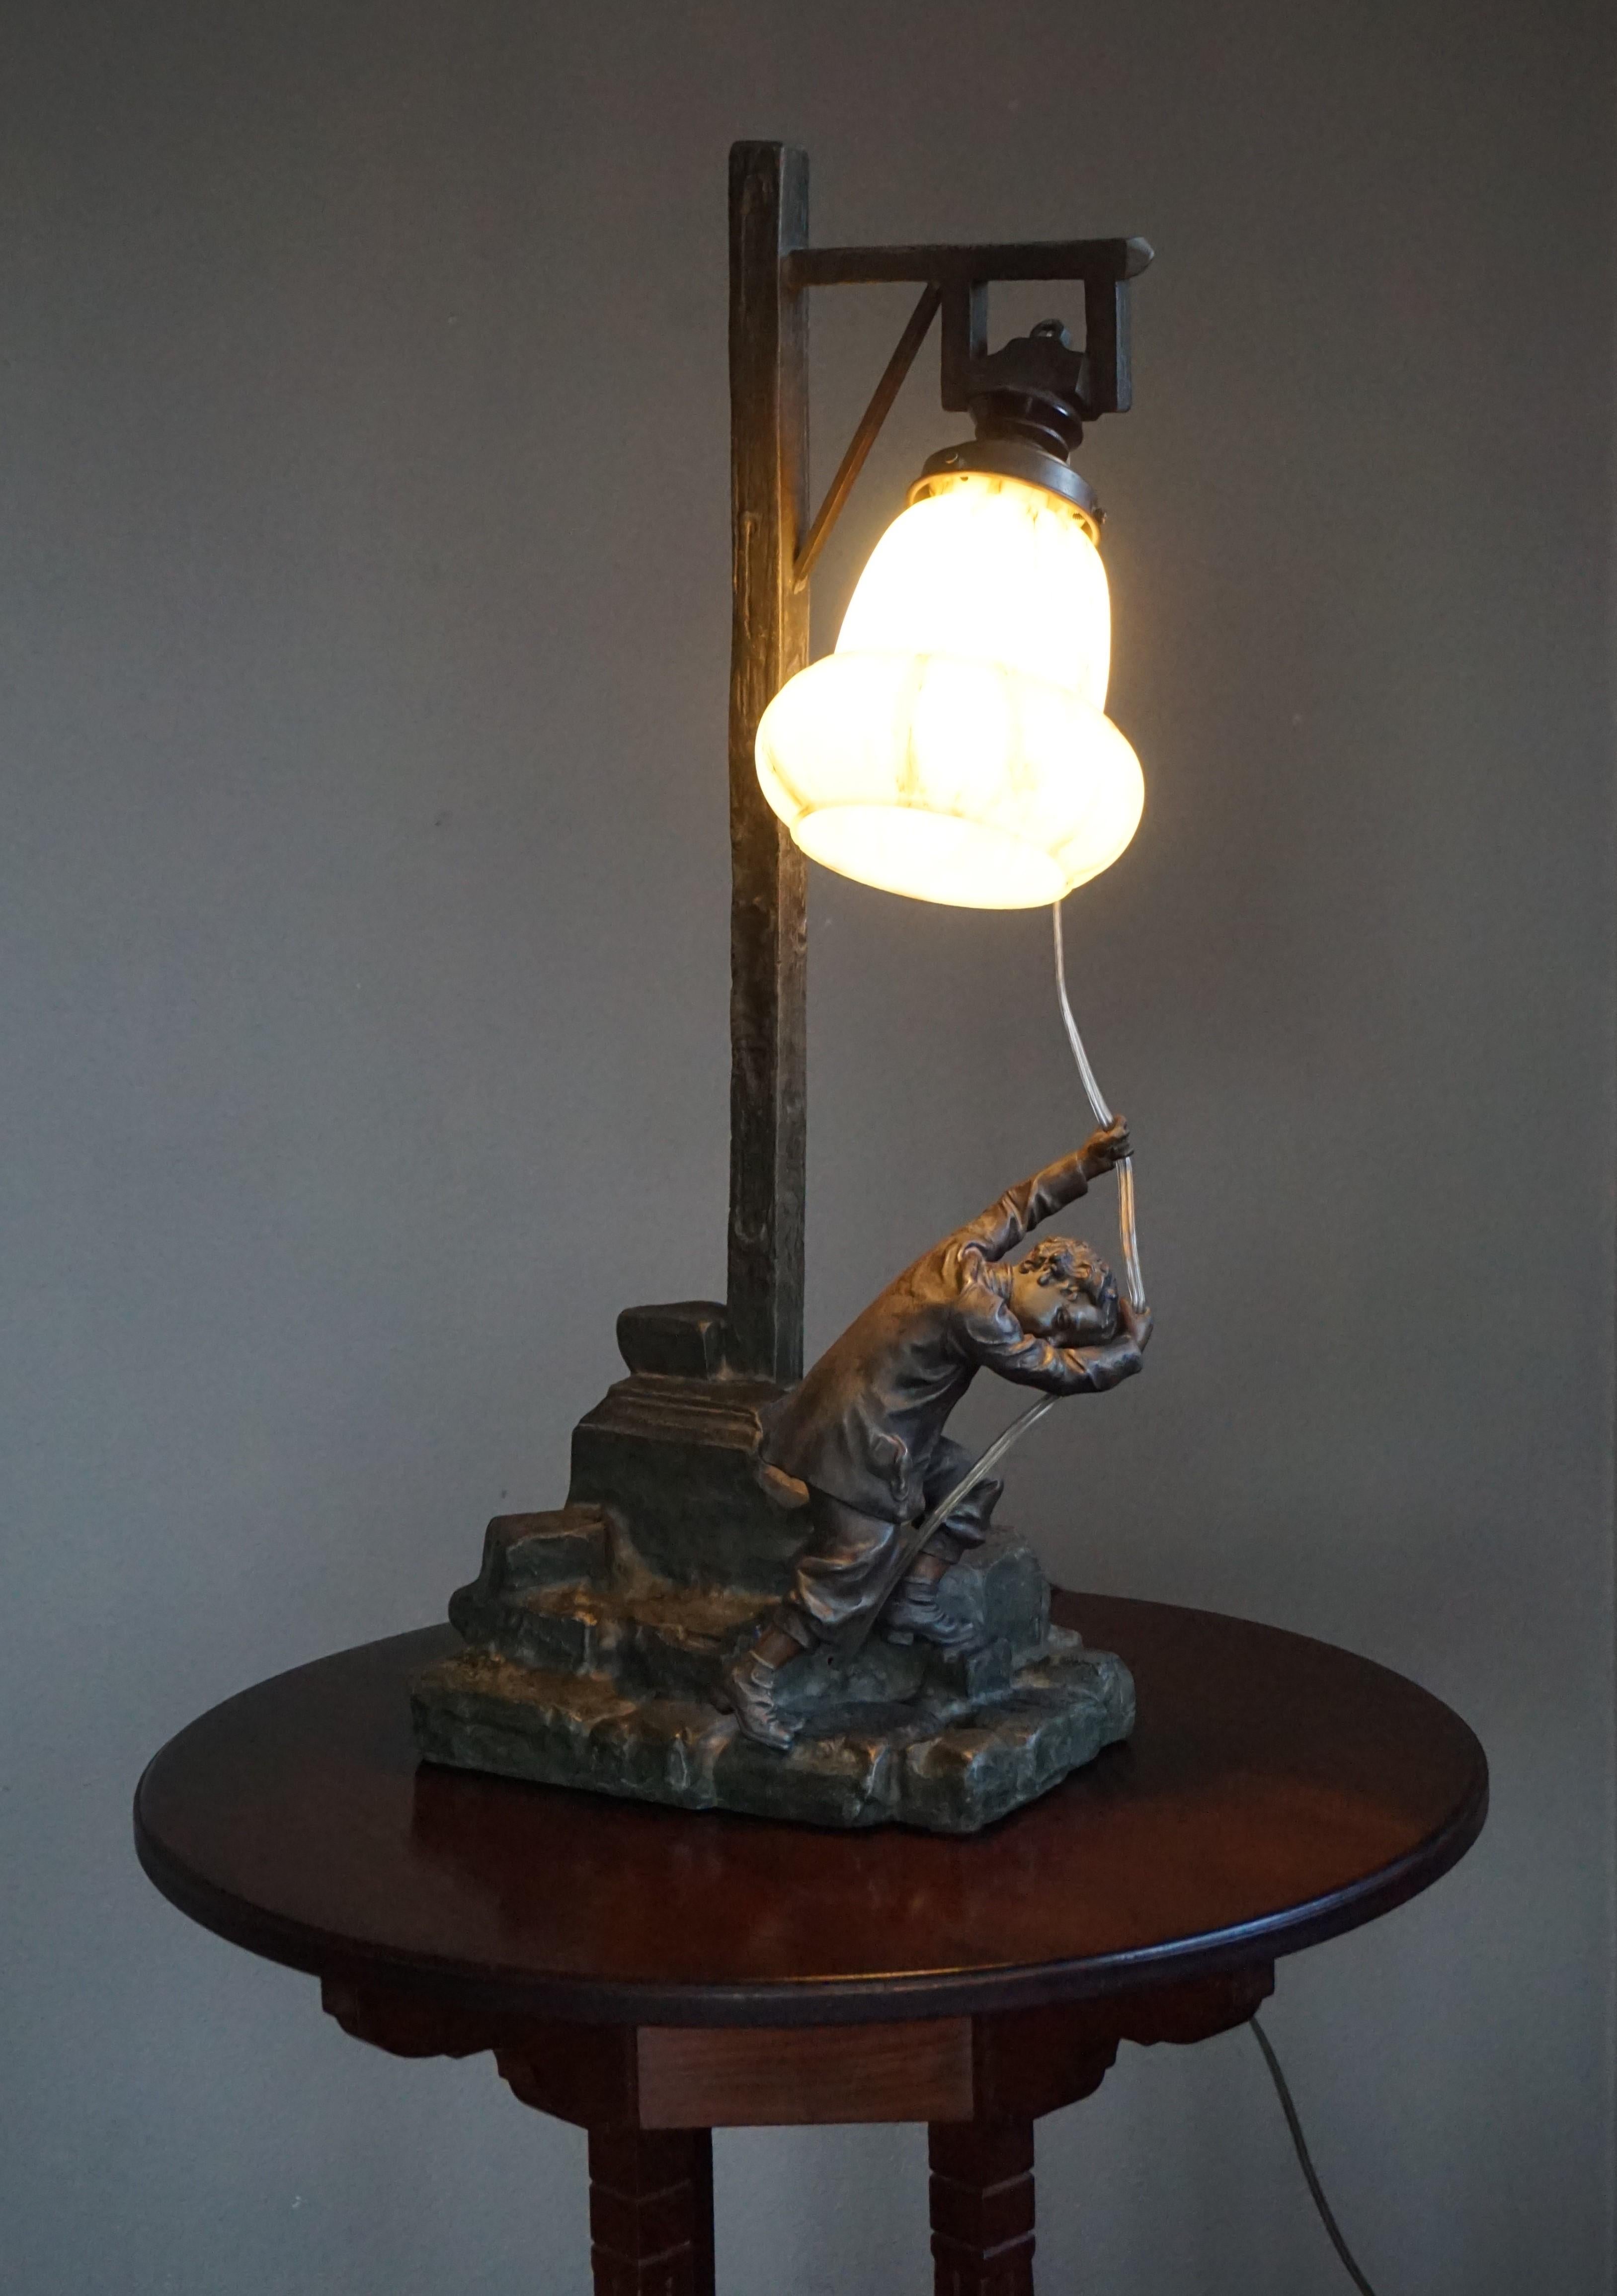 Große und sehr dekorative antike Tischlampe mit einer hochwertigen Knabenskulptur.

Wenn Sie auf der Suche nach einer seltenen und aussagekräftigen Tischlampe sind, die auch noch schön anzusehen ist, dann könnte dies die richtige Lampe für Sie sein.